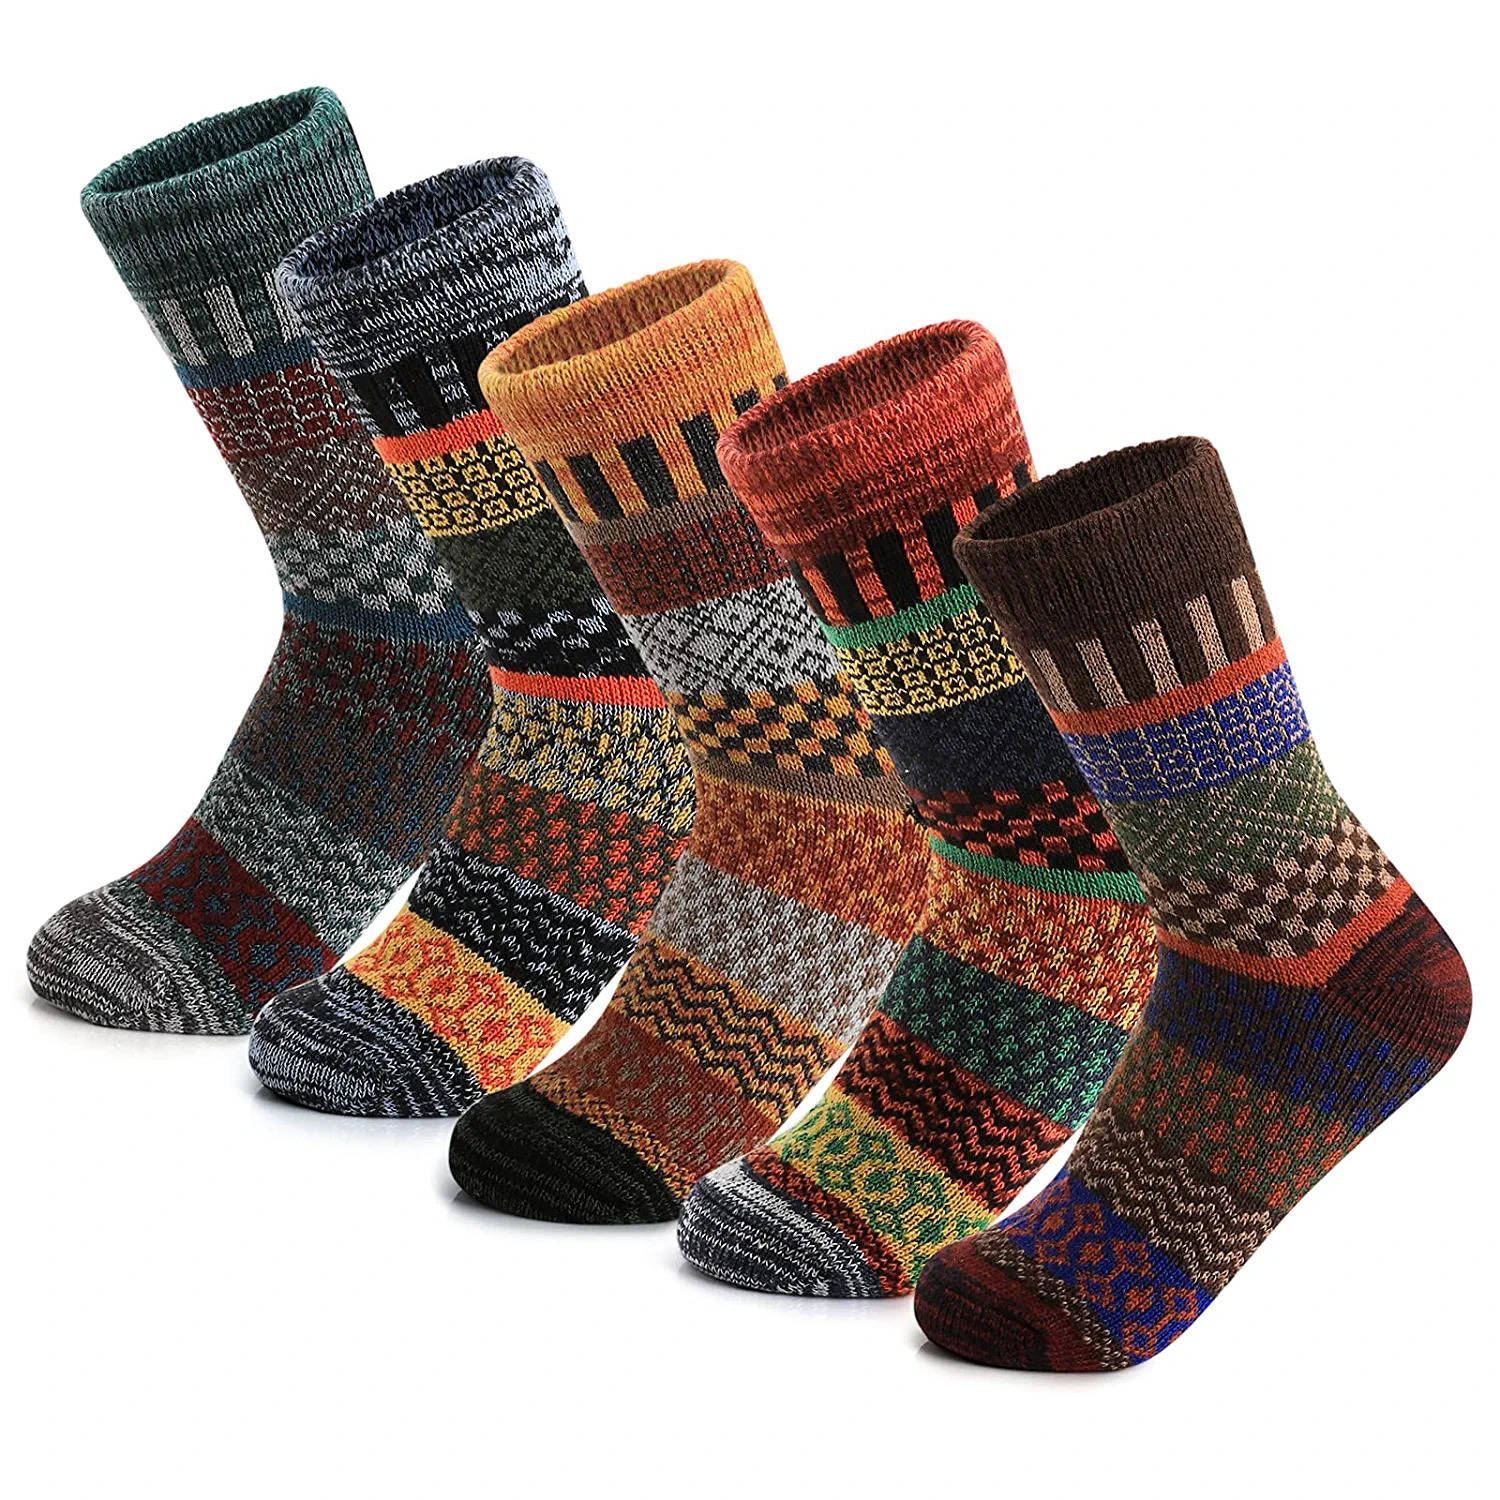 Woollen socks for women: 6 Best Winter Socks for Women to Stay Warm ...